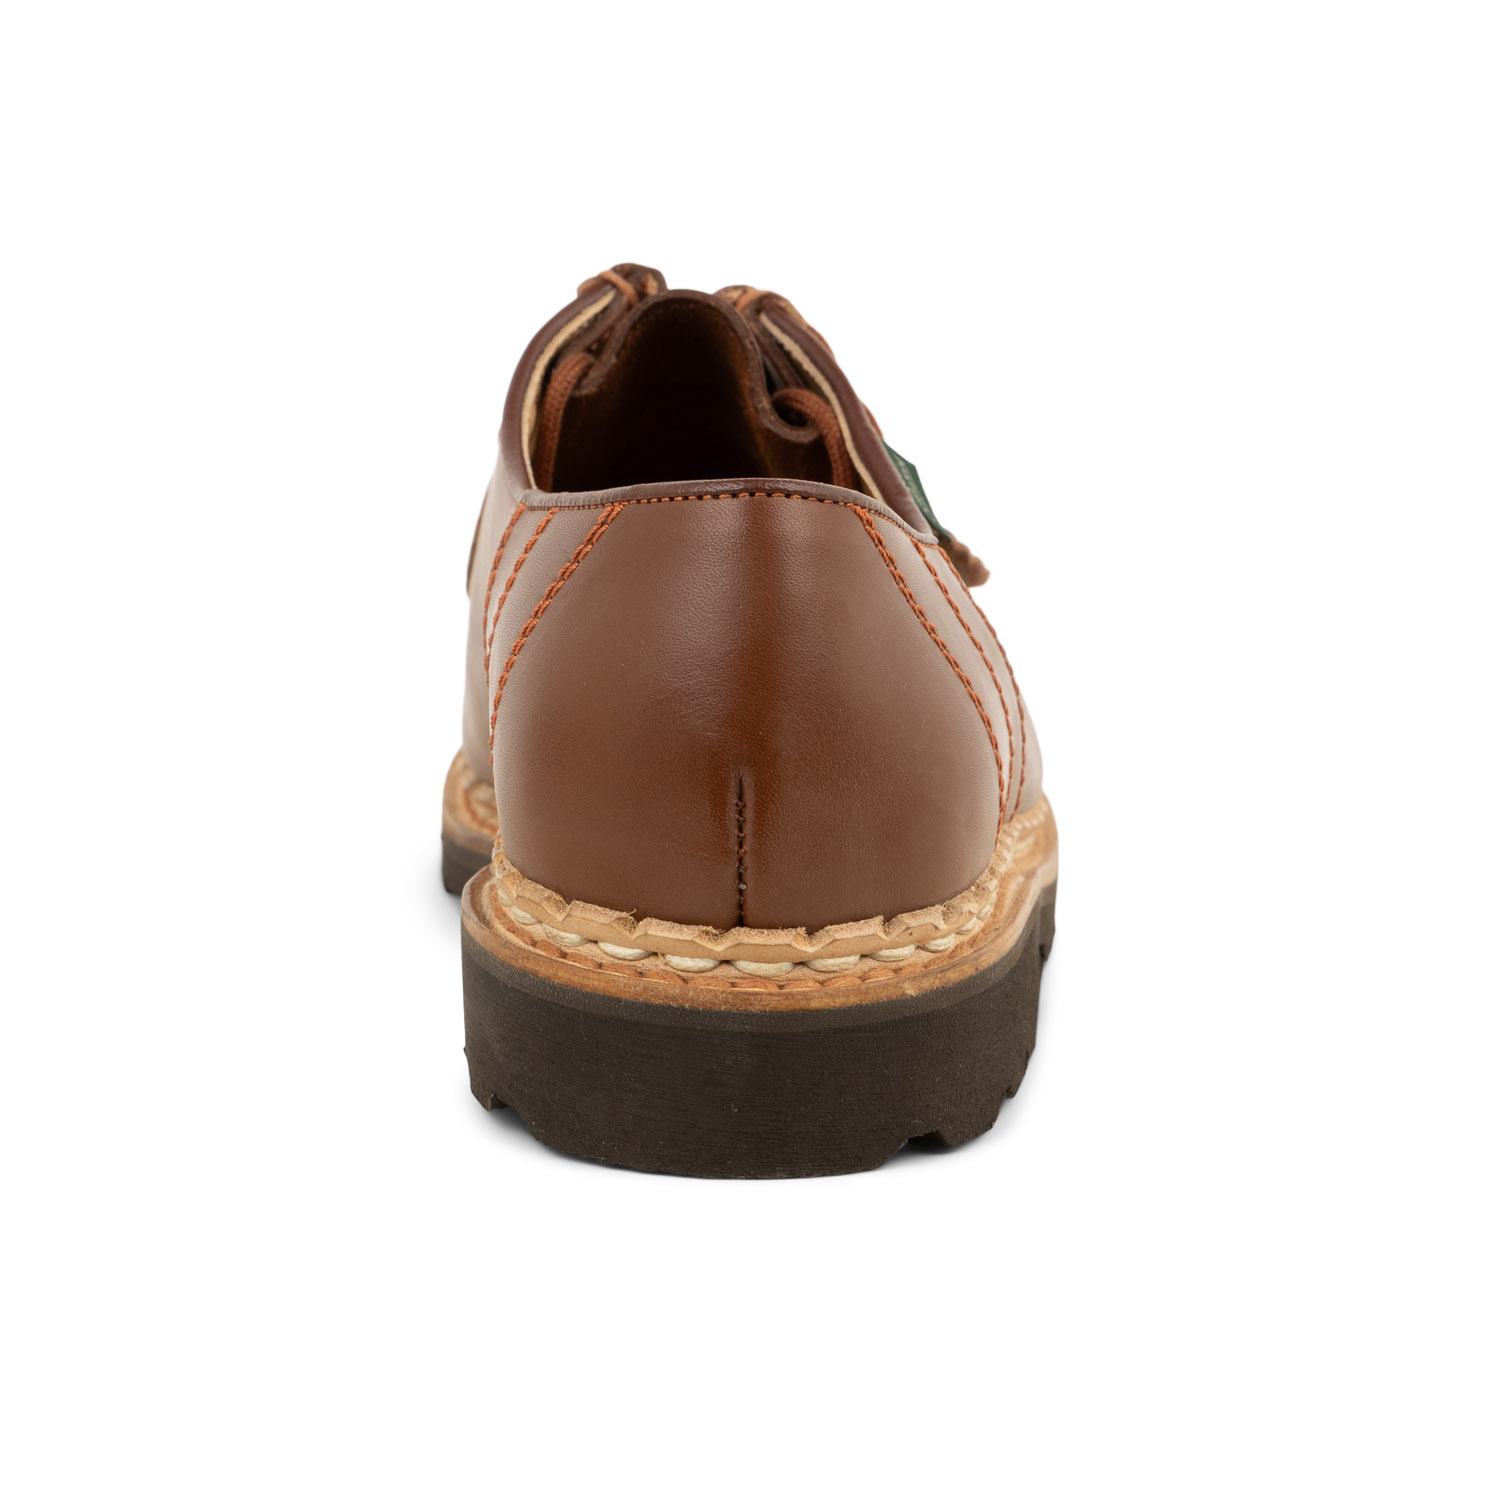 03 - MORZINE - PARABOOT - Chaussures à lacets - Cuir